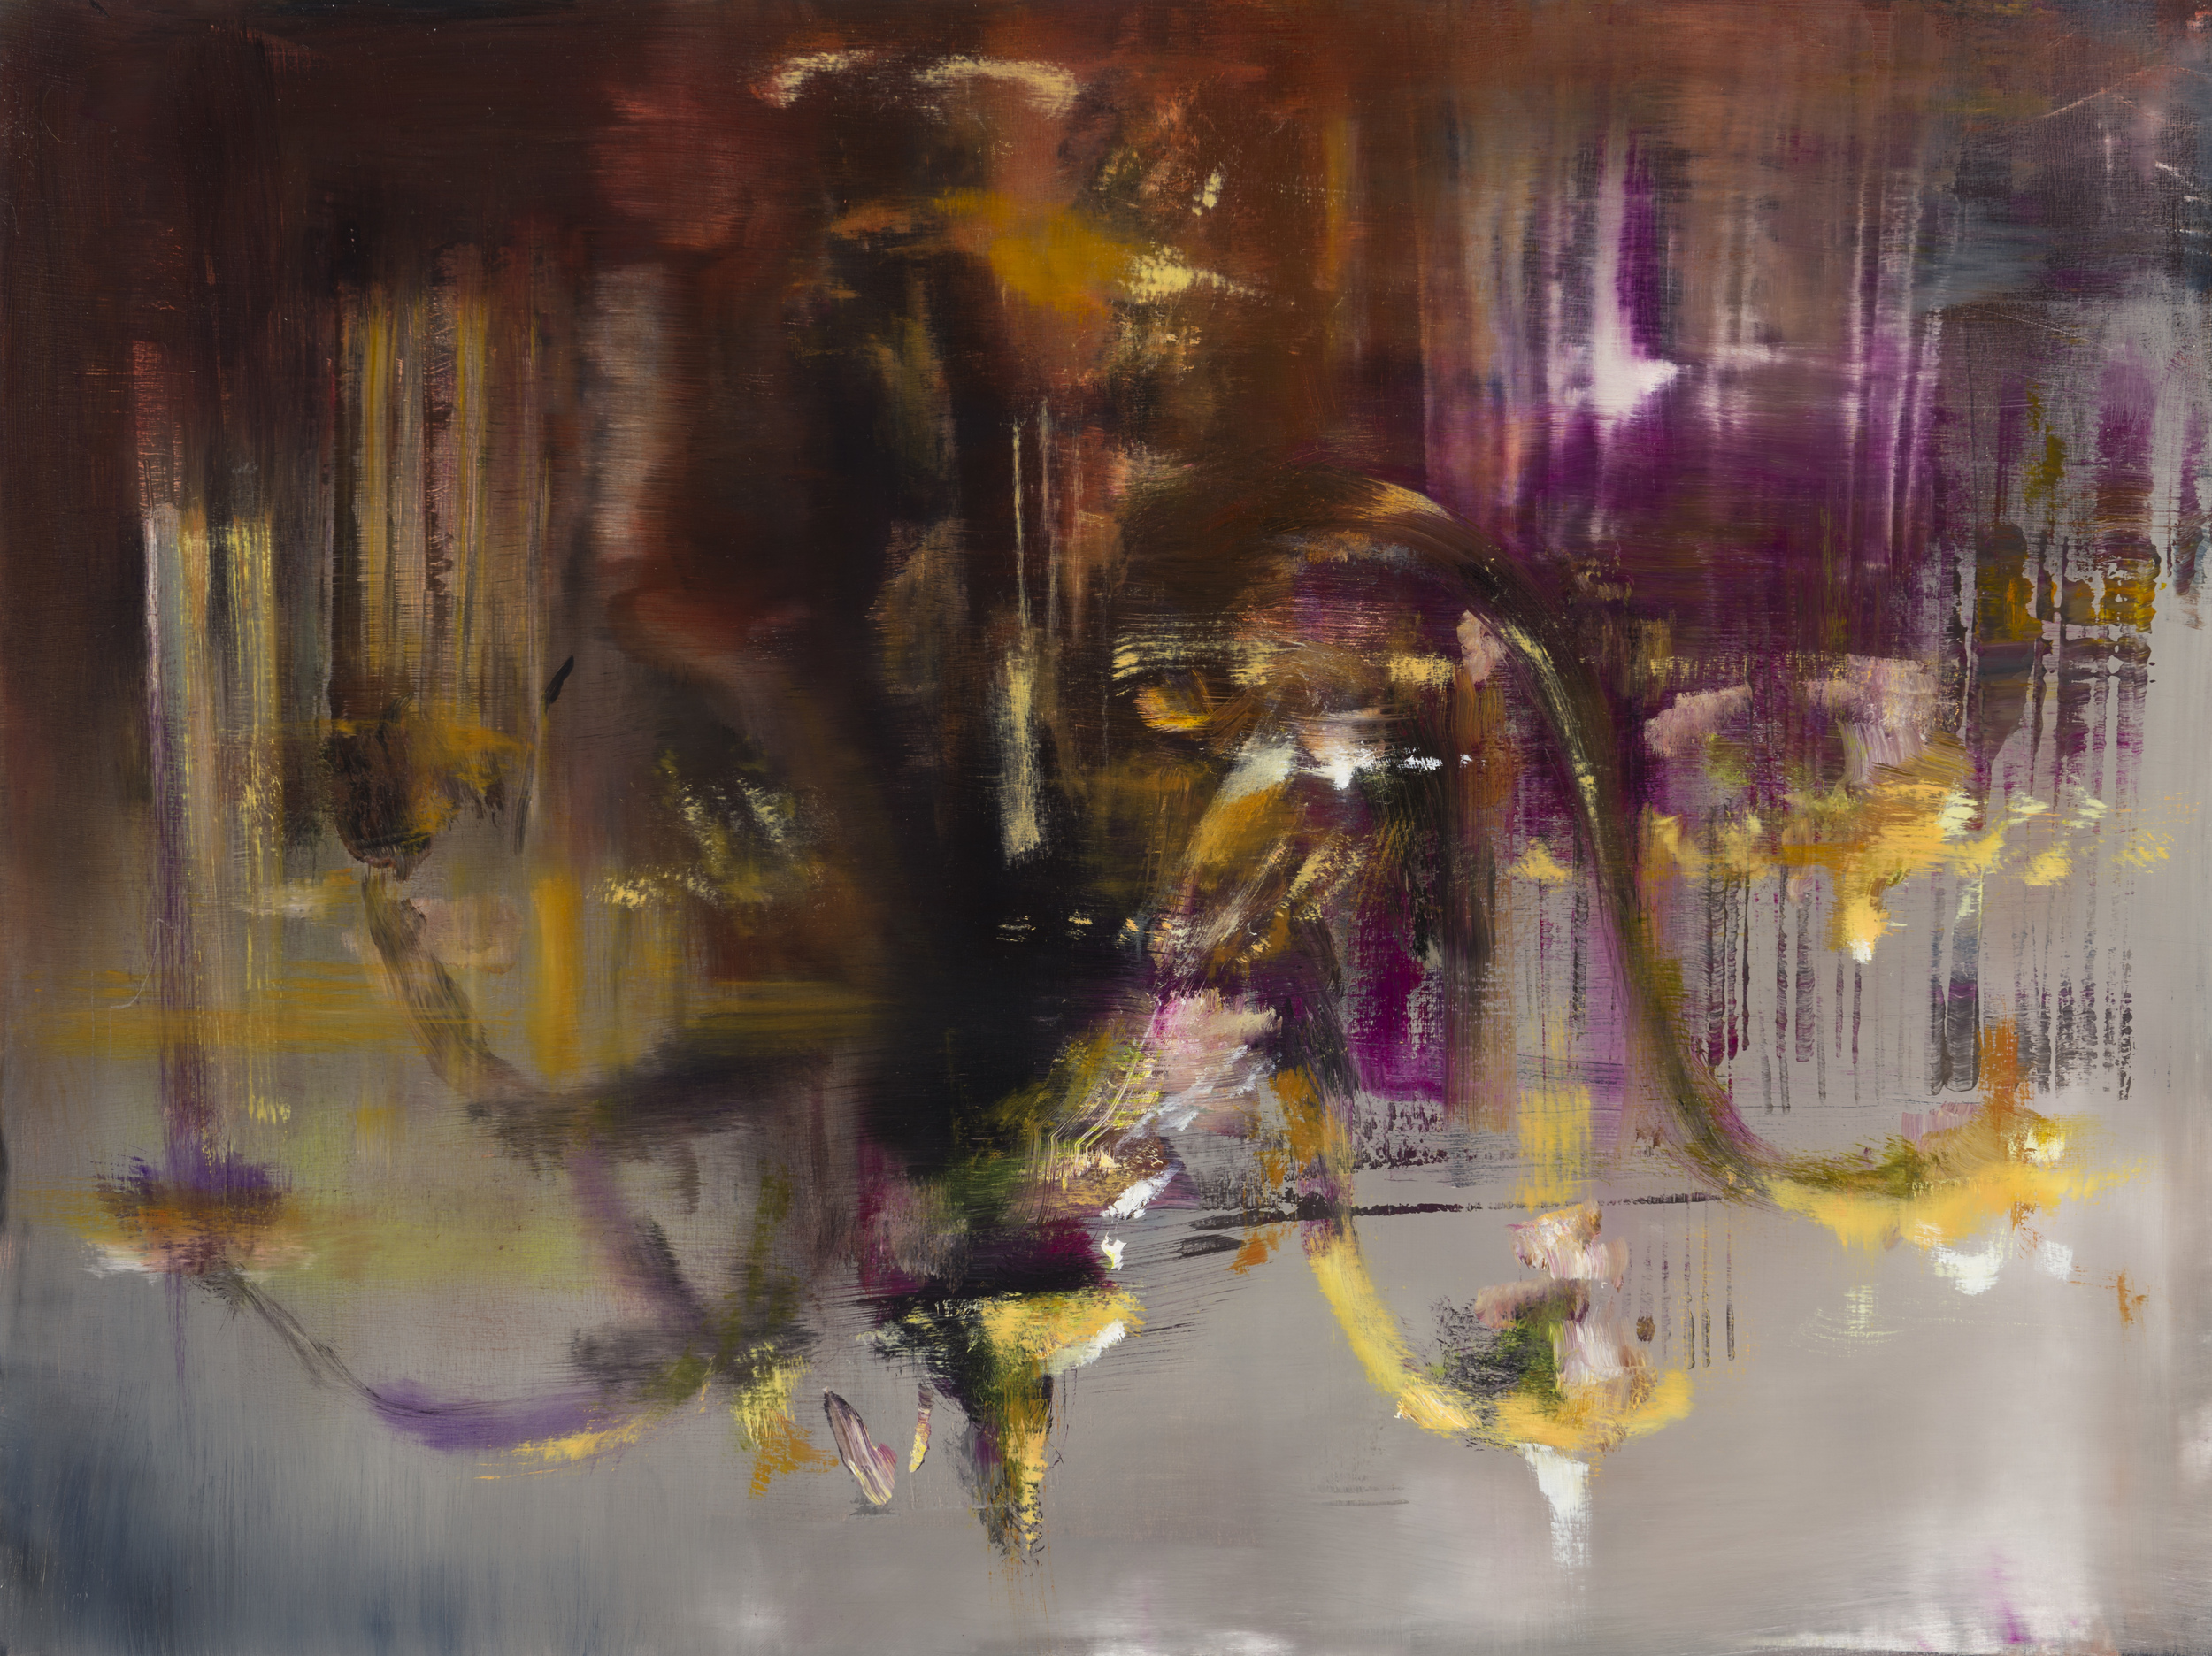   chandelier&nbsp;&nbsp;  •   18" x 24"  oil on panel  2013    